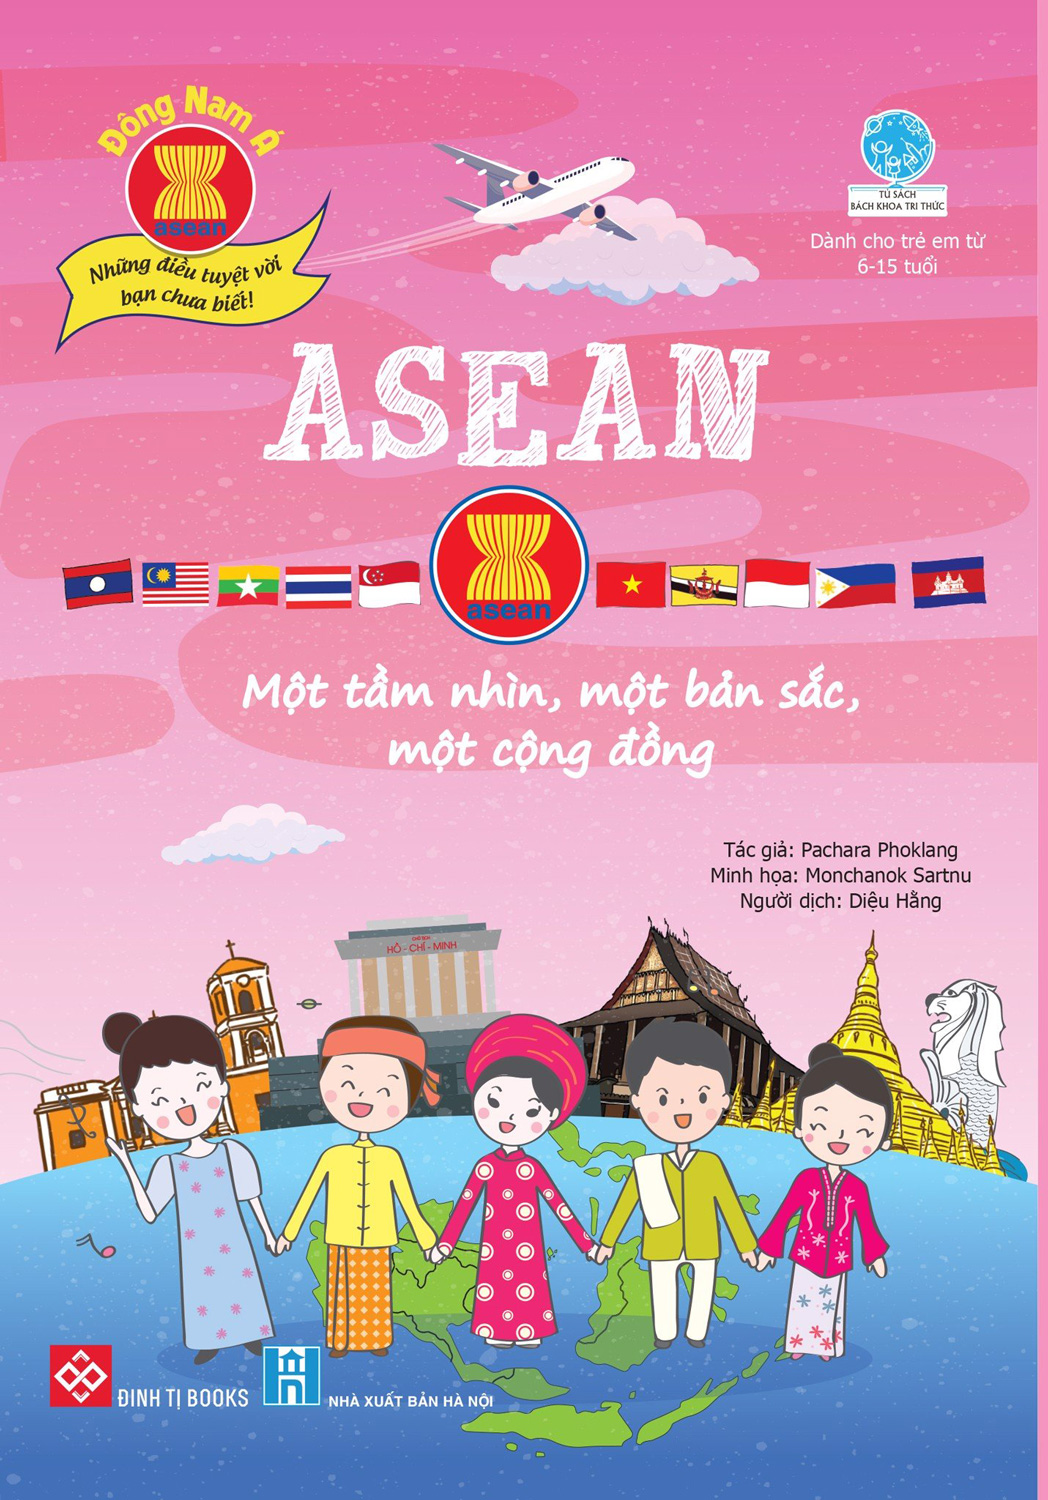 Đông Nam Á - Những Điều Tuyệt Vời Bạn Chưa Biết: ASEAN - Một Tầm Nhìn, Một Bản Sắc, Một Cộng Đồng